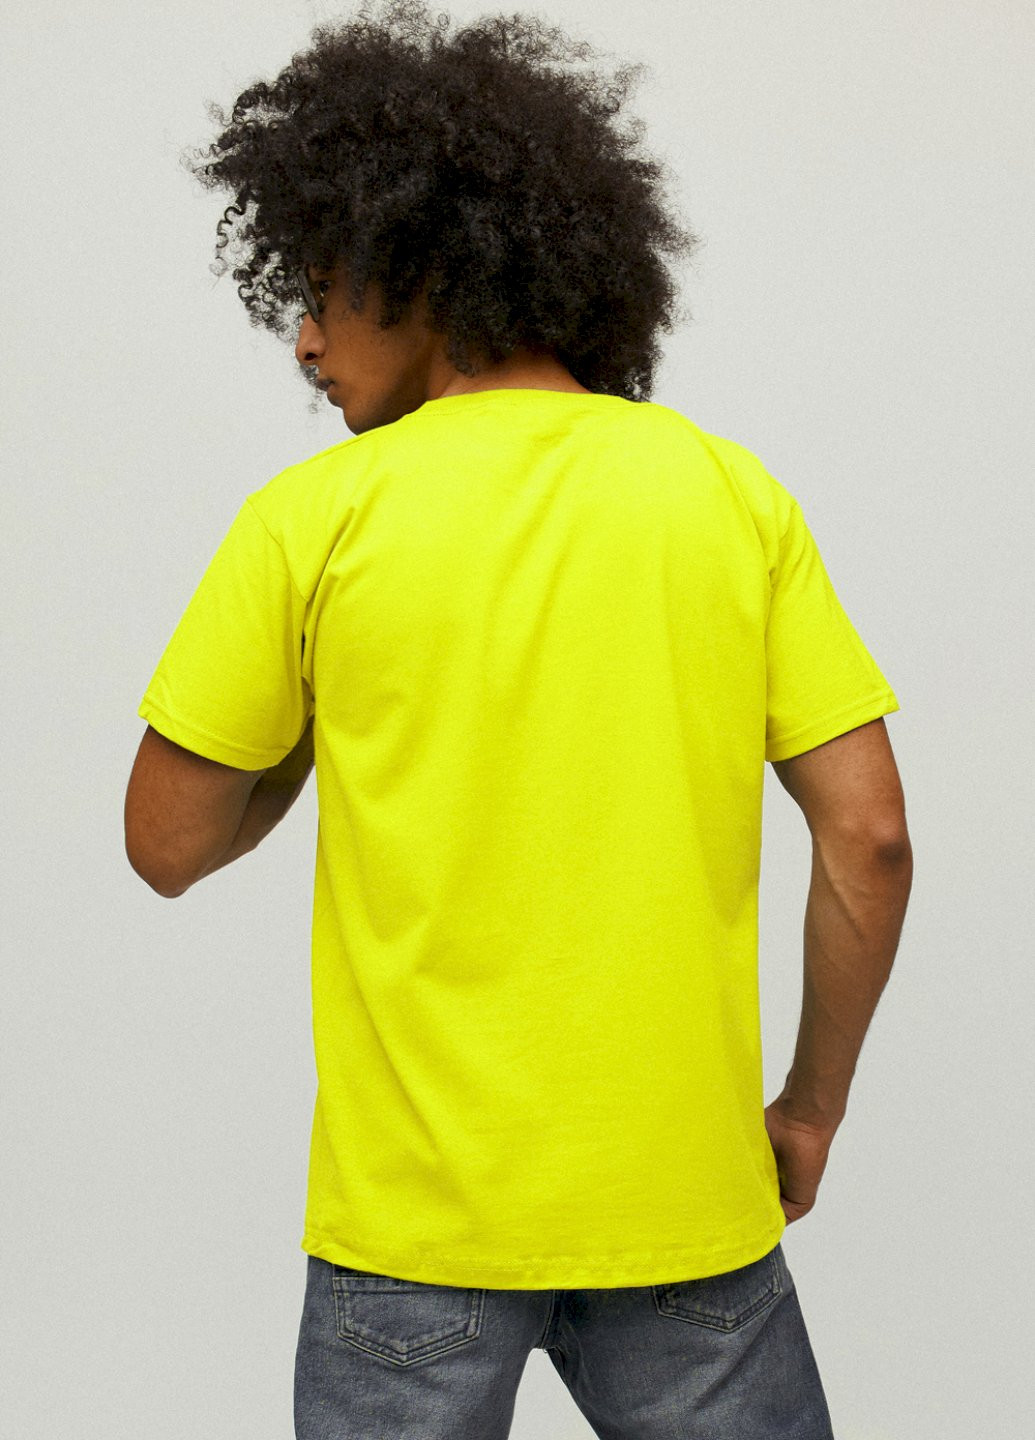 Желтая футболка мужская желтая "f16" YAPPI